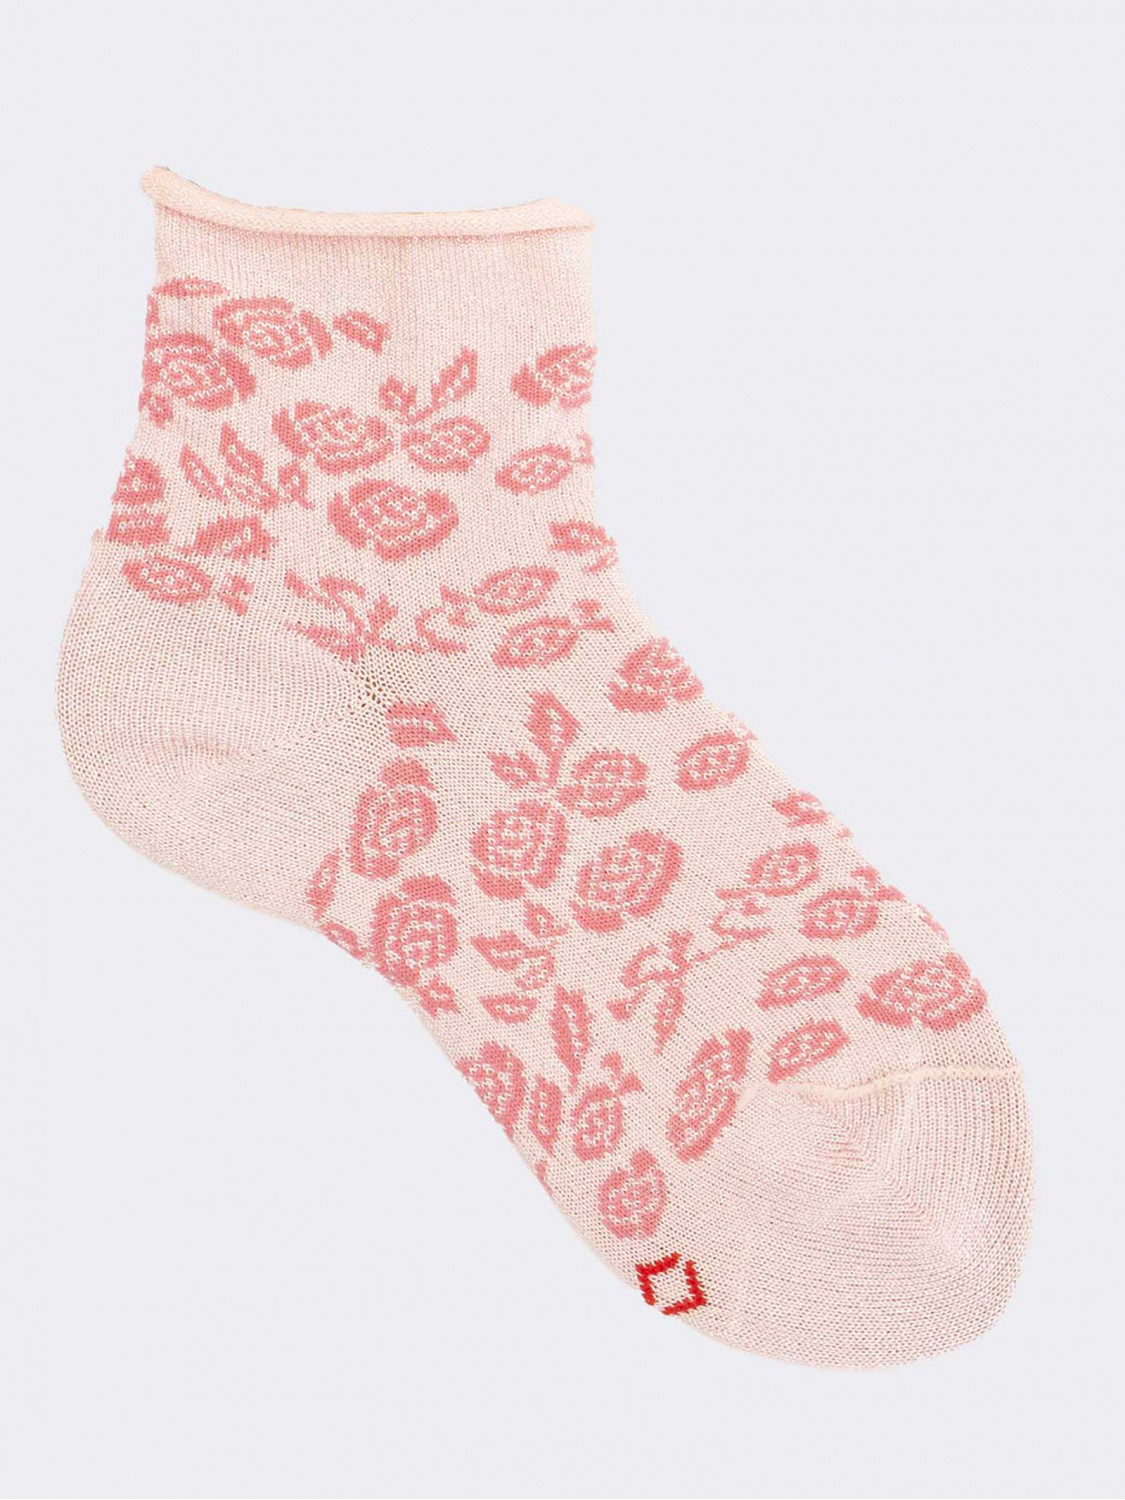 Rose Pattern Girl's Short Socks in Cotton